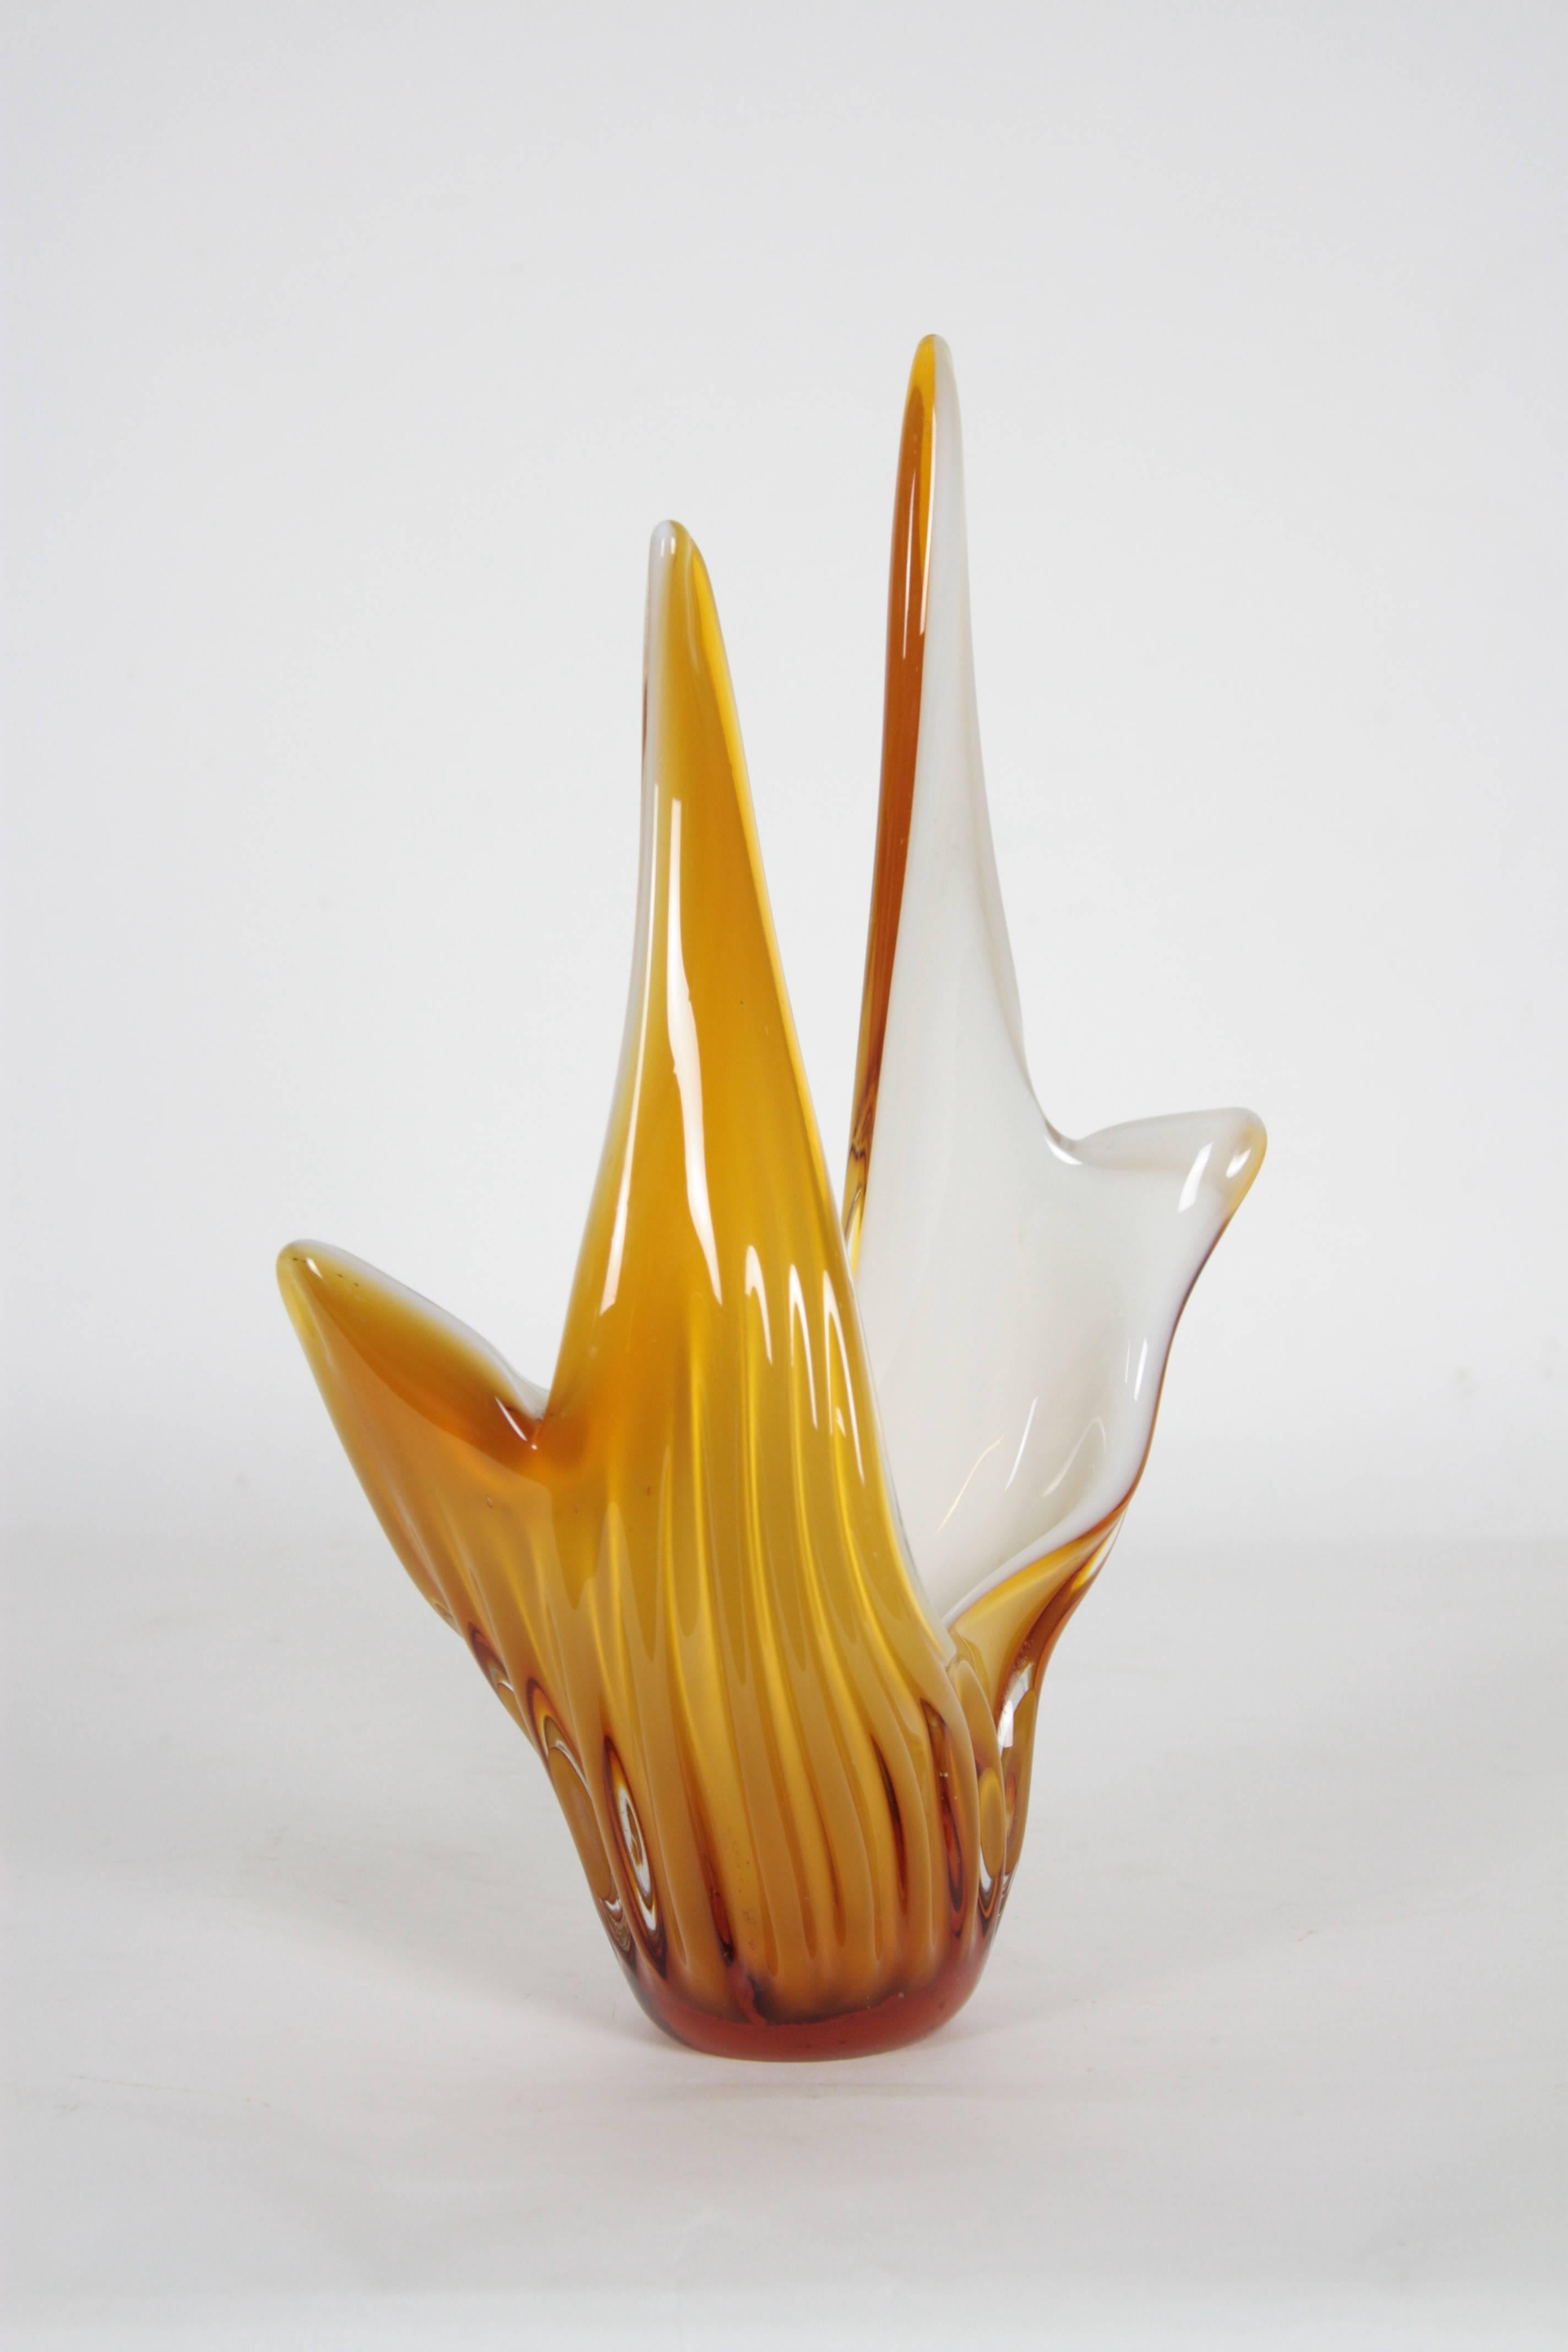 Art Glass 1960s Italian Toffee and White Murano Glass Vase